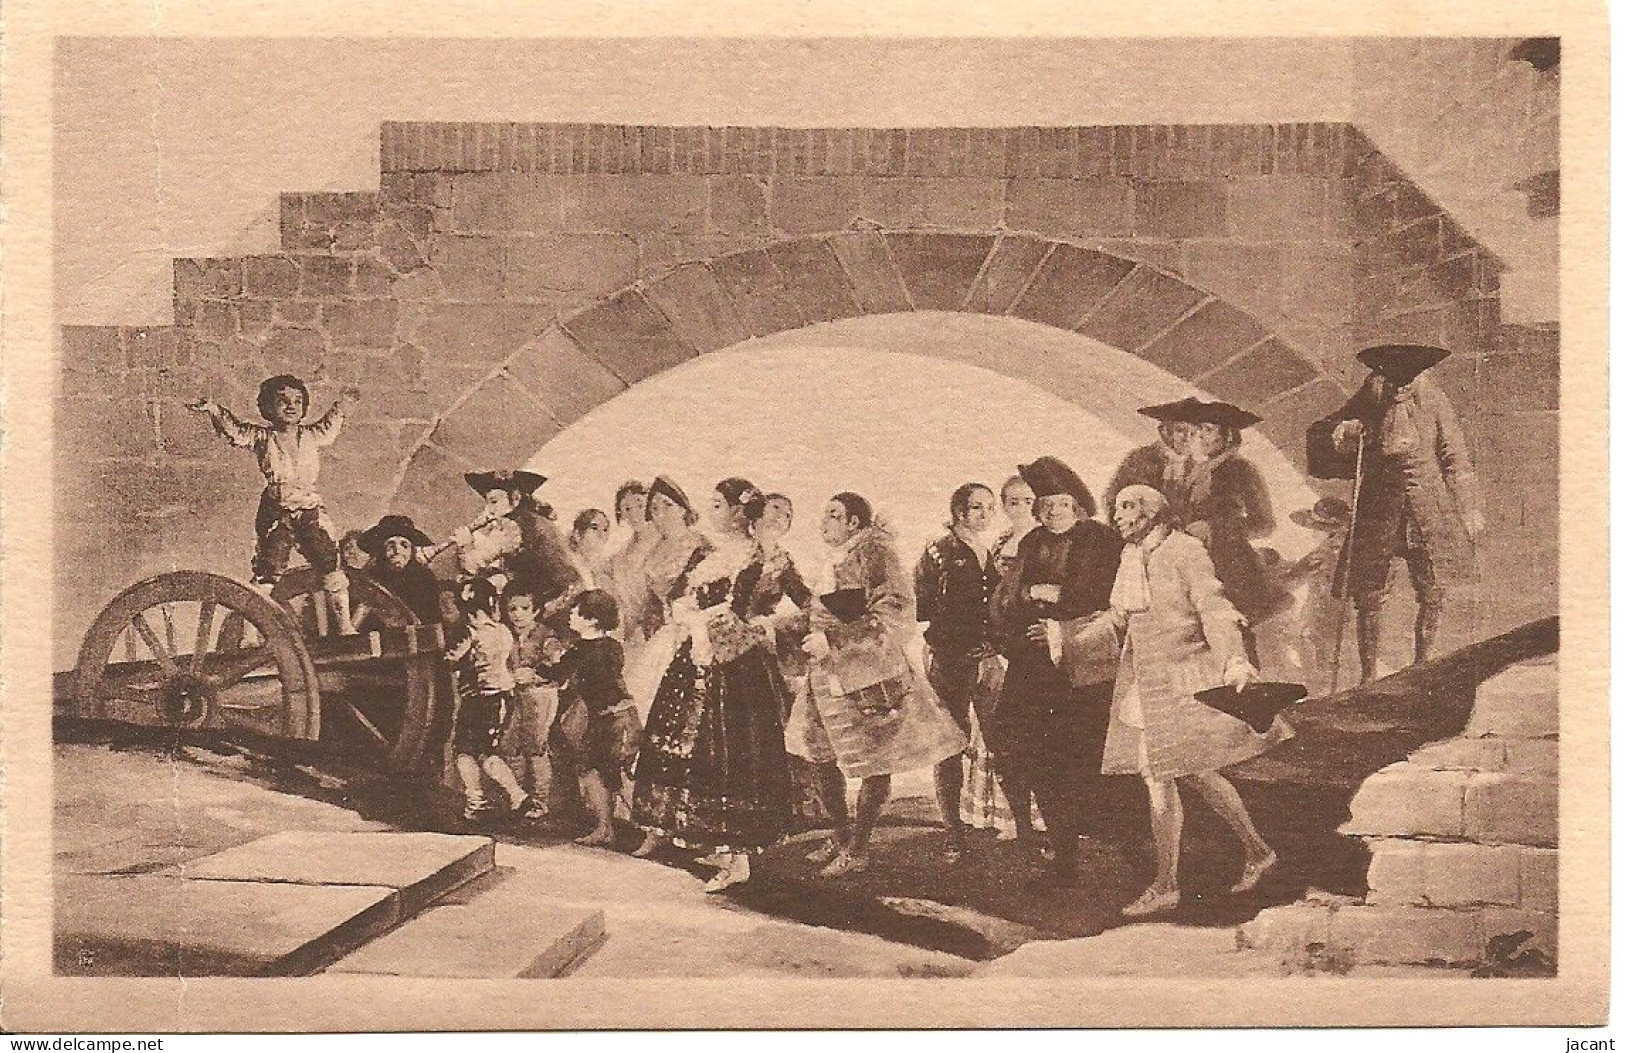 Espana - Goya - Tableaux - Lot avec 20 cartes - toutes les images